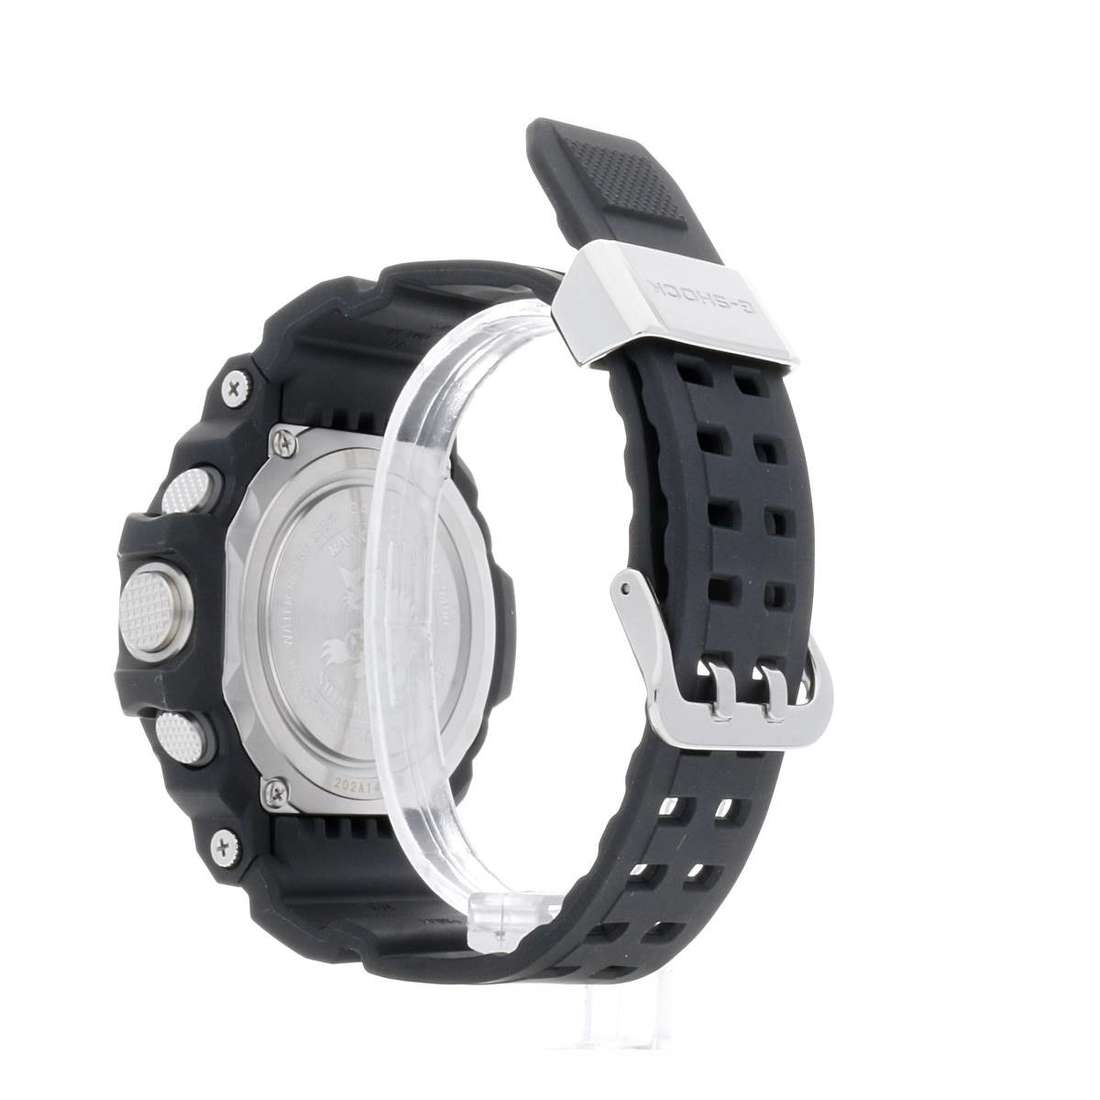 Offres montres homme G-Shock GW-9400-1ER